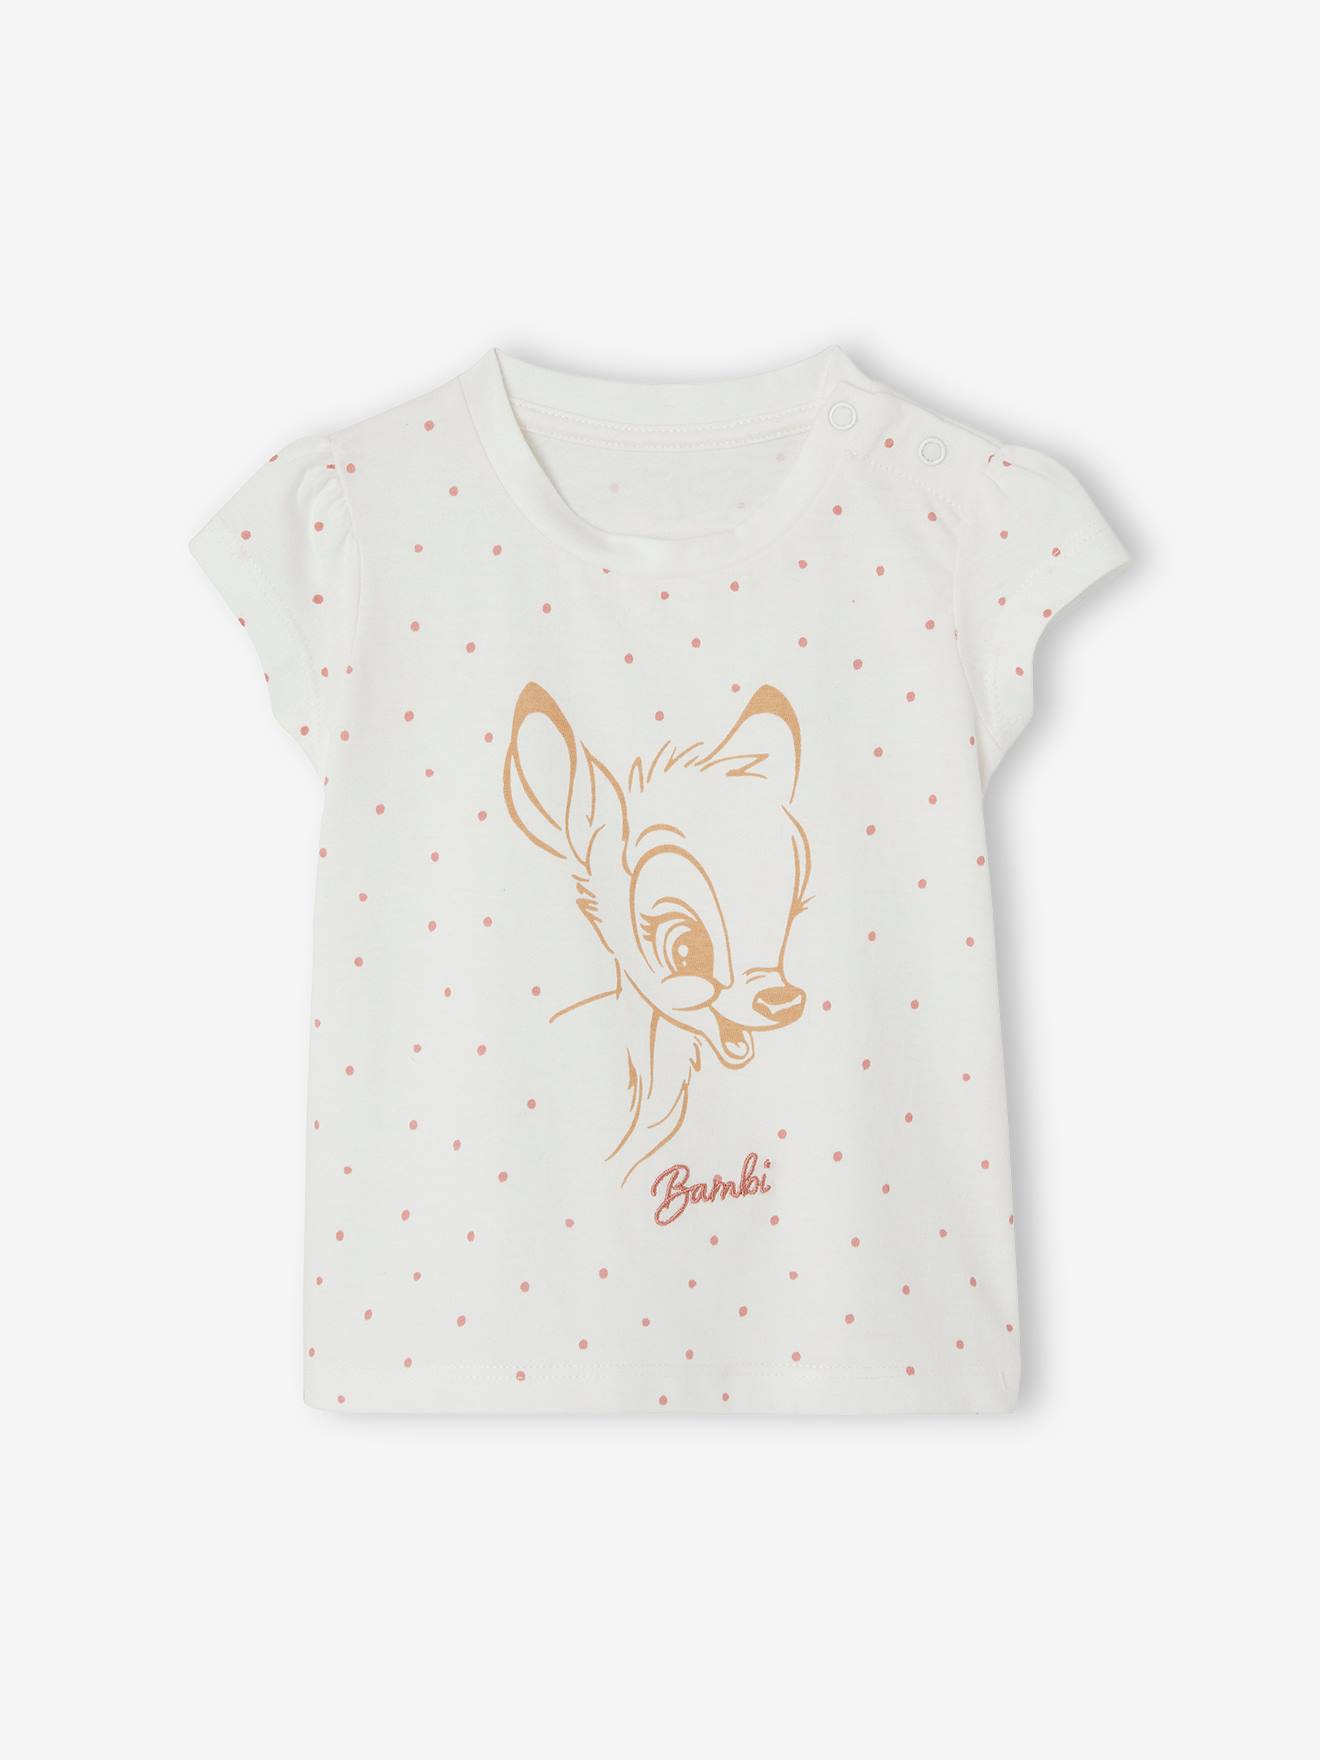 Baby T-Shirt Disney BAMBI von Disney Animals